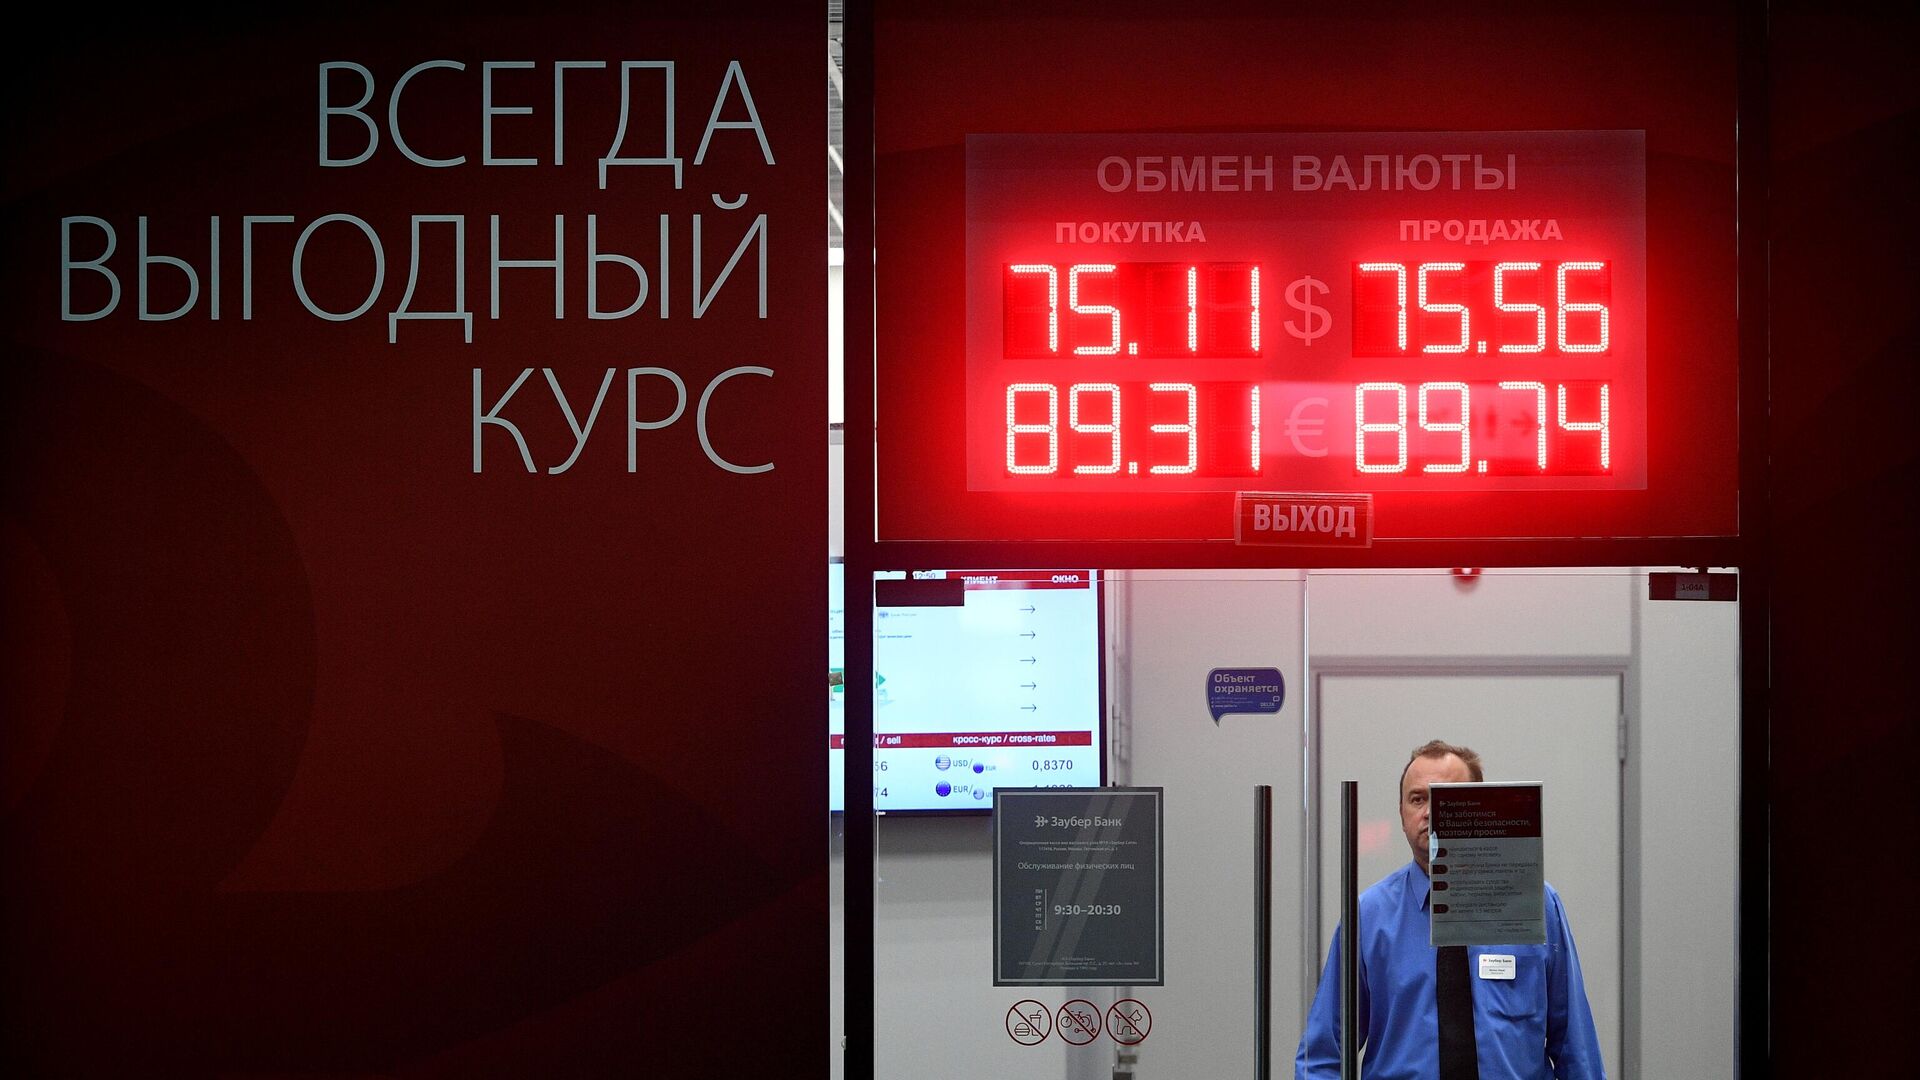 Обмен валюты курсы в москве на сегодня клеймор дуал майнинг